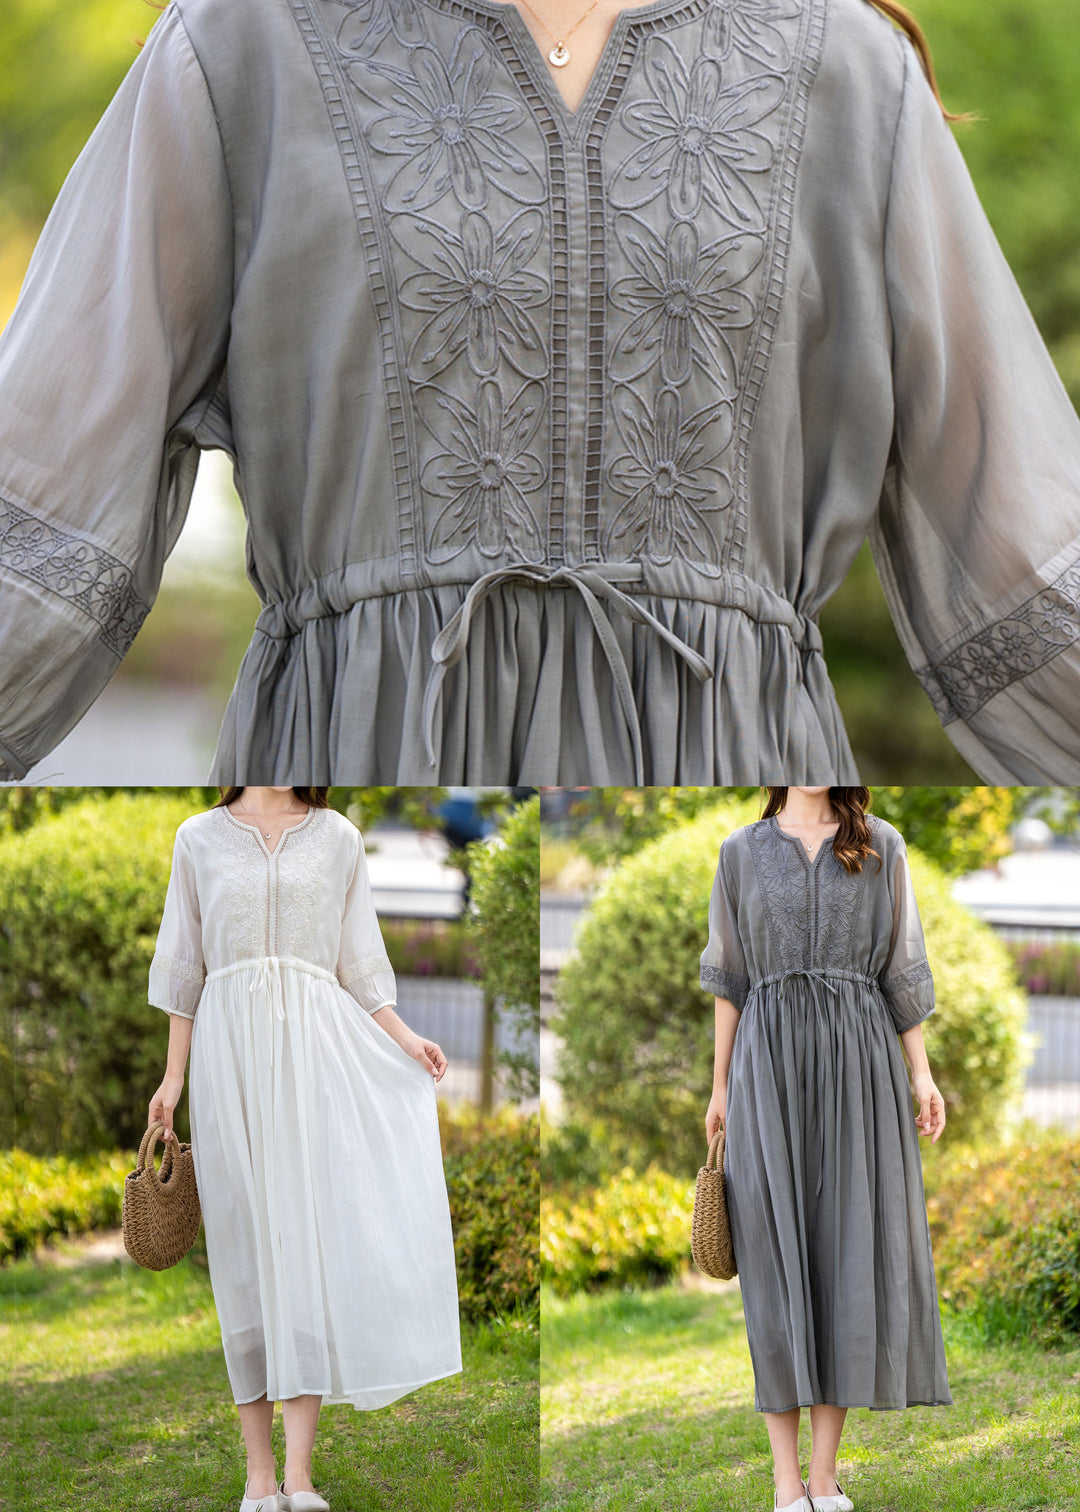 Handmade Grey Embroideried Drawstring Patchwork Linen Dress Summer